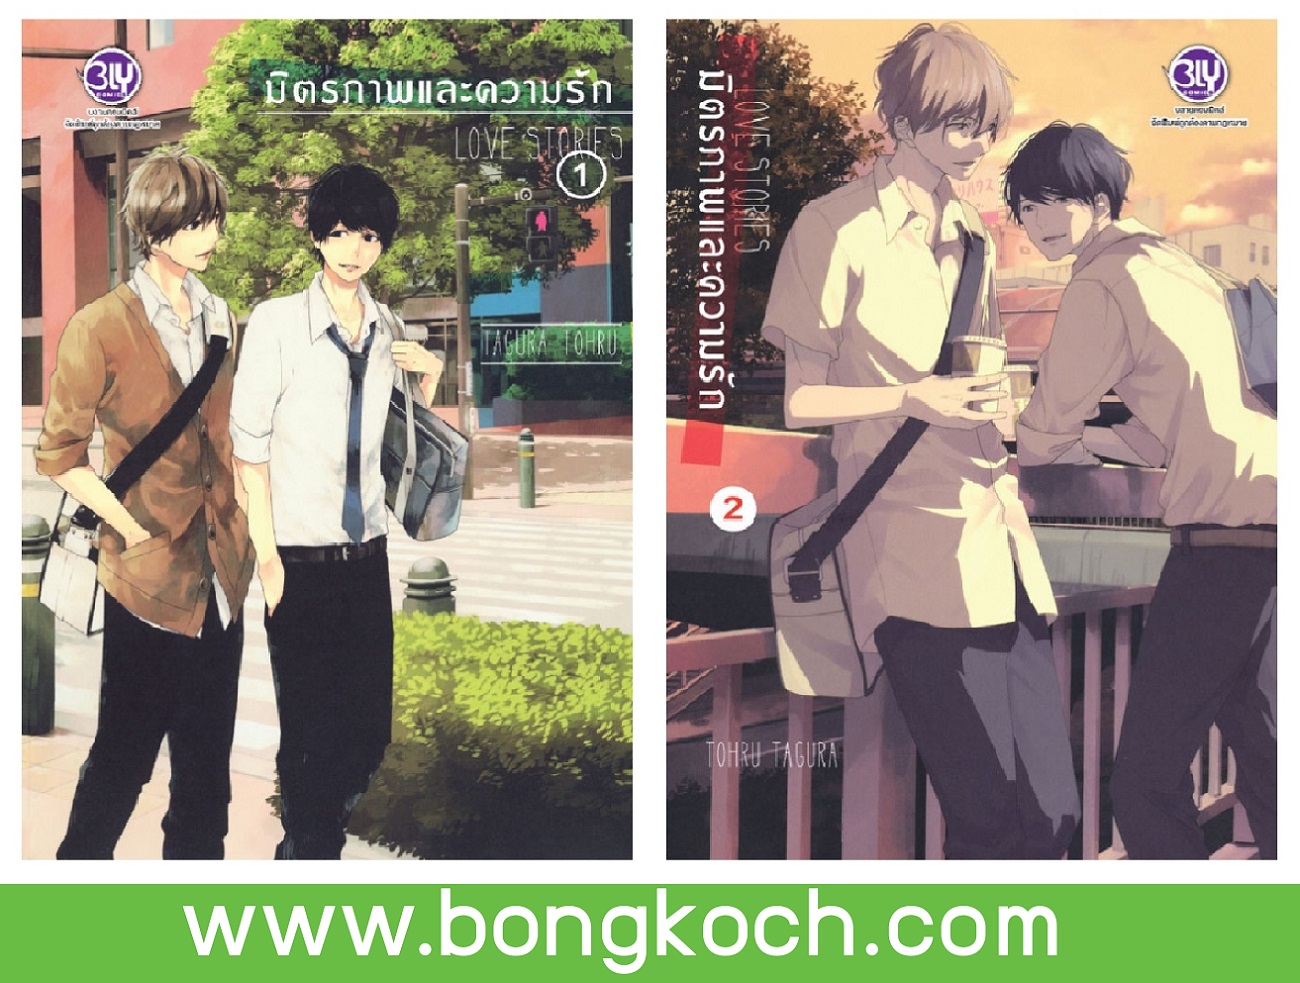 หนังสือการ์ตูน PACK SET! มิตรภาพและความรัก LOVE STORIES (เล่ม 1-2) ประเภท การ์ตูน ญี่ปุ่น บงกช Bongkoch